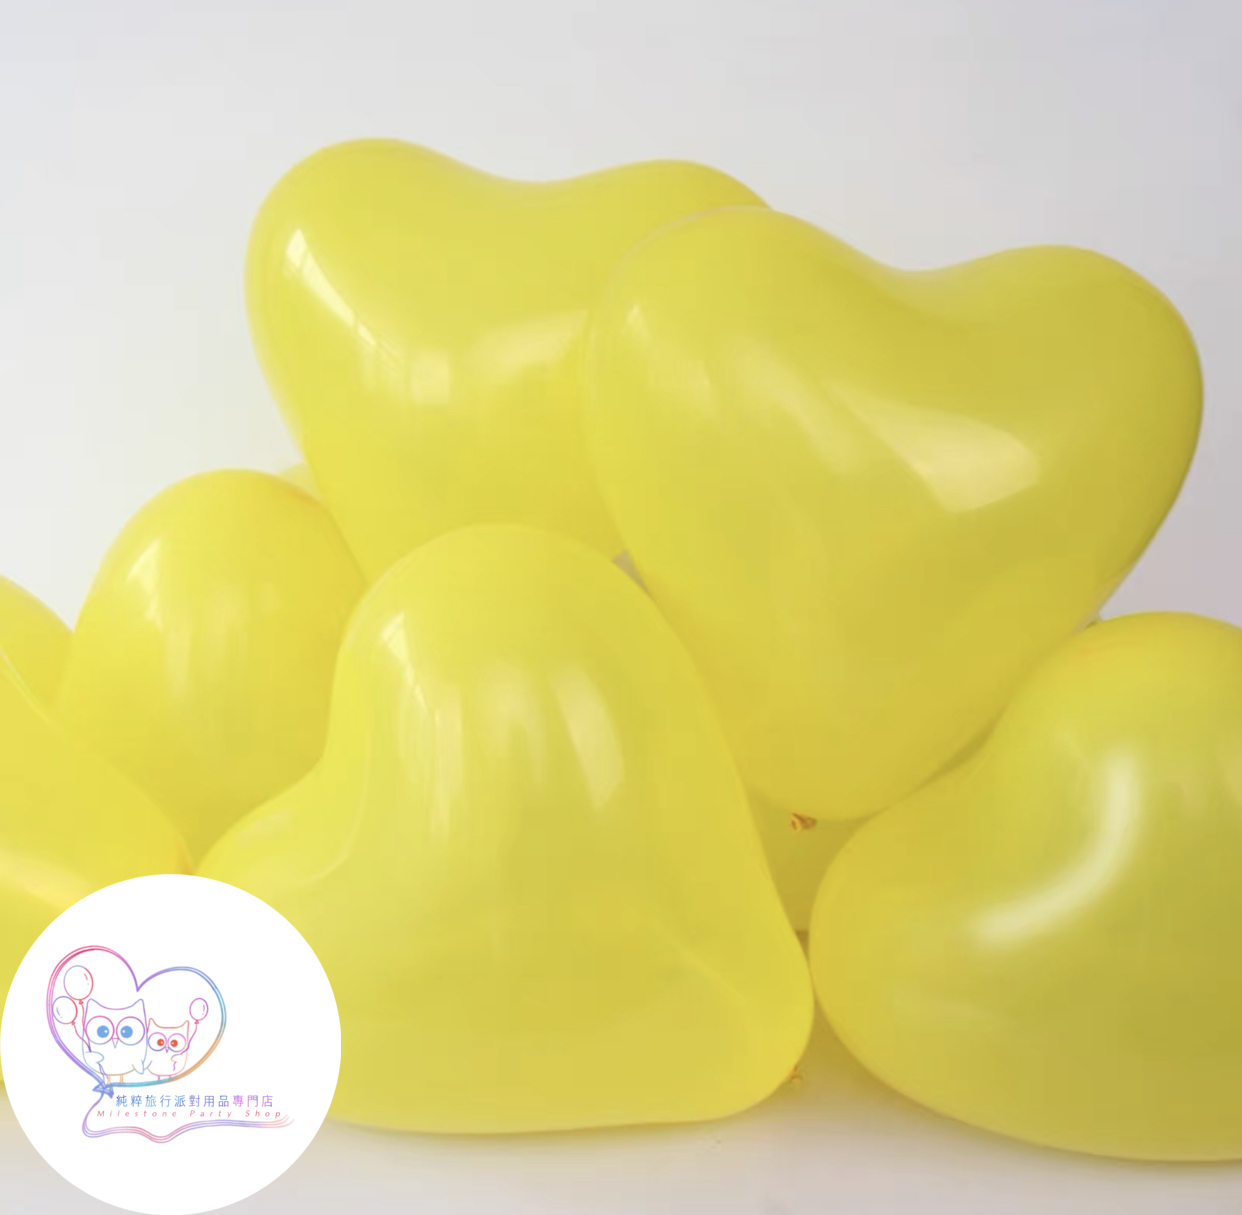 12吋心形氣球 (黃色) (1pc) 12LBH3